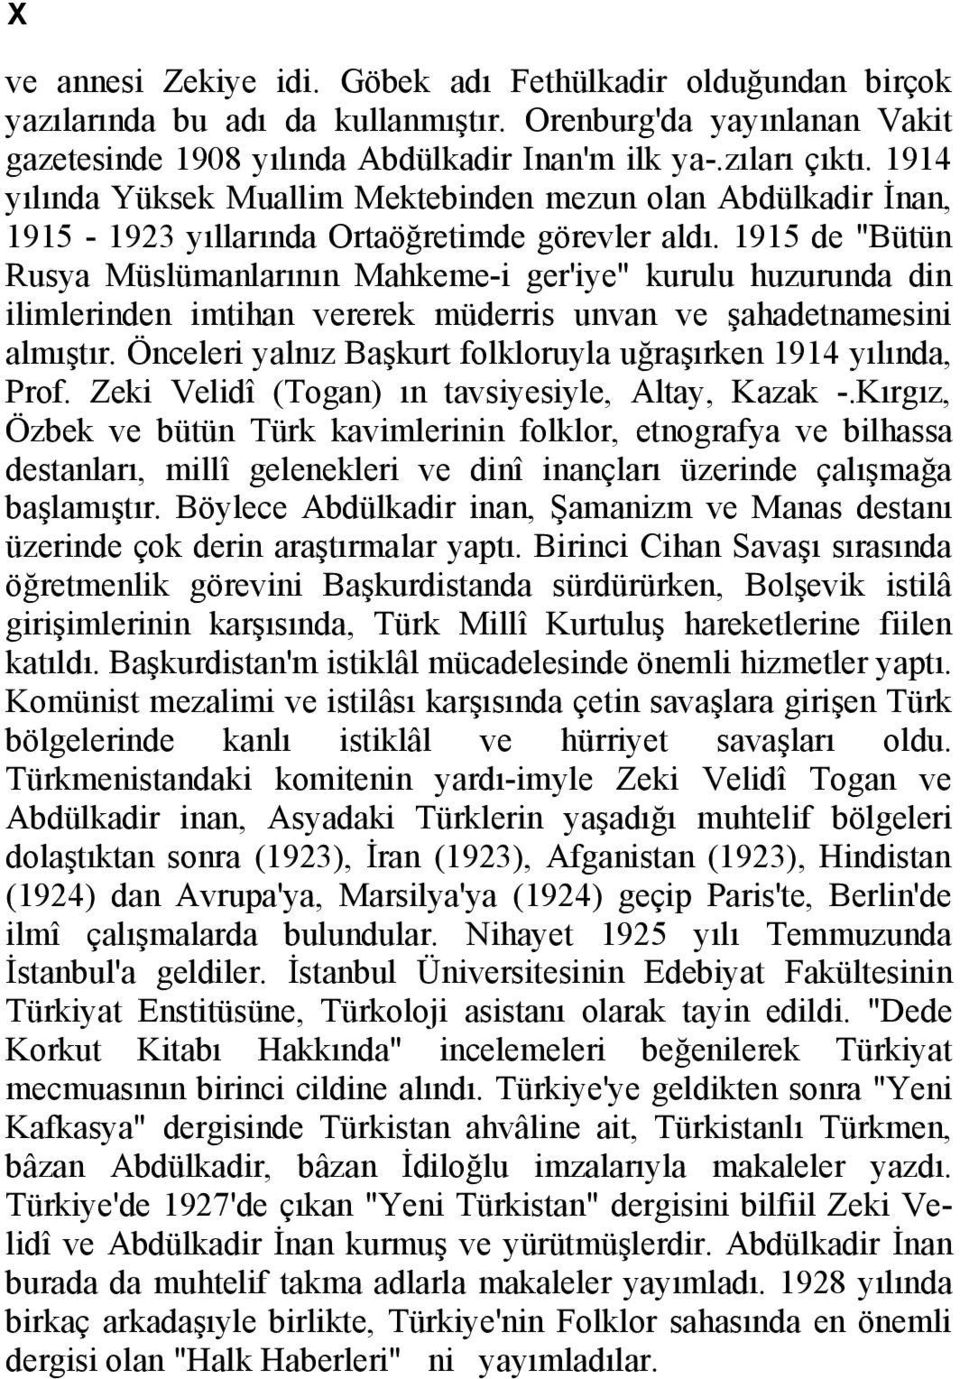 1915 de "Bütün Rusya Müslümanlarının Mahkeme-i ger'iye" kurulu huzurunda din ilimlerinden imtihan vererek müderris unvan ve şahadetnamesini almıştır.